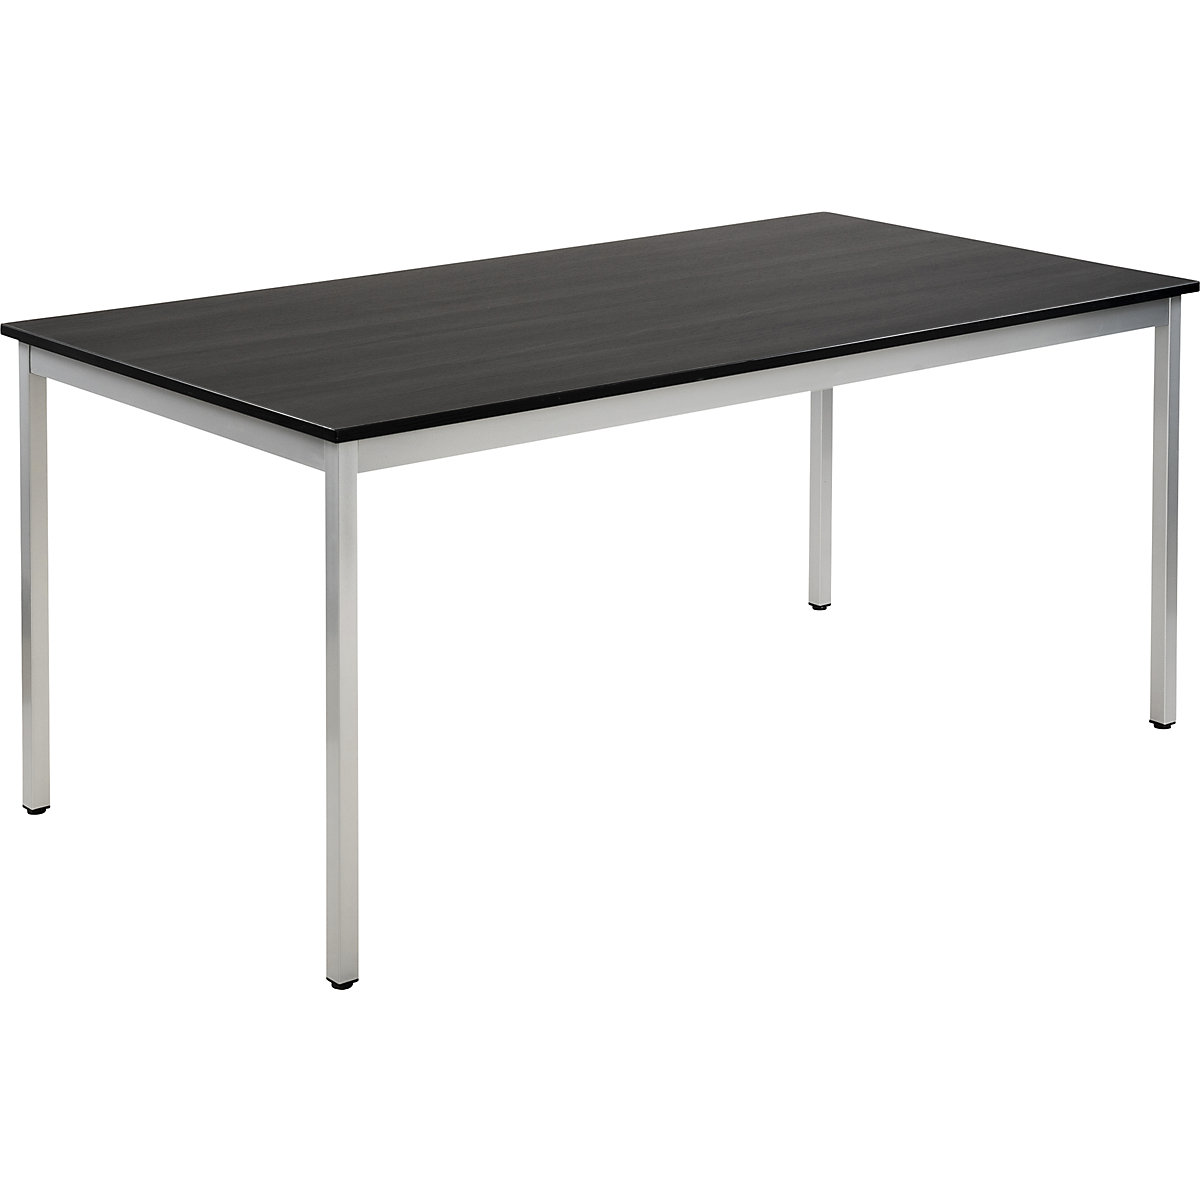 Table polyvalente – eurokraft basic, rectangulaire, h x l x p 740 x 1600 x 800 mm, plateau façon frêne gris foncé, piétement aluminium-16